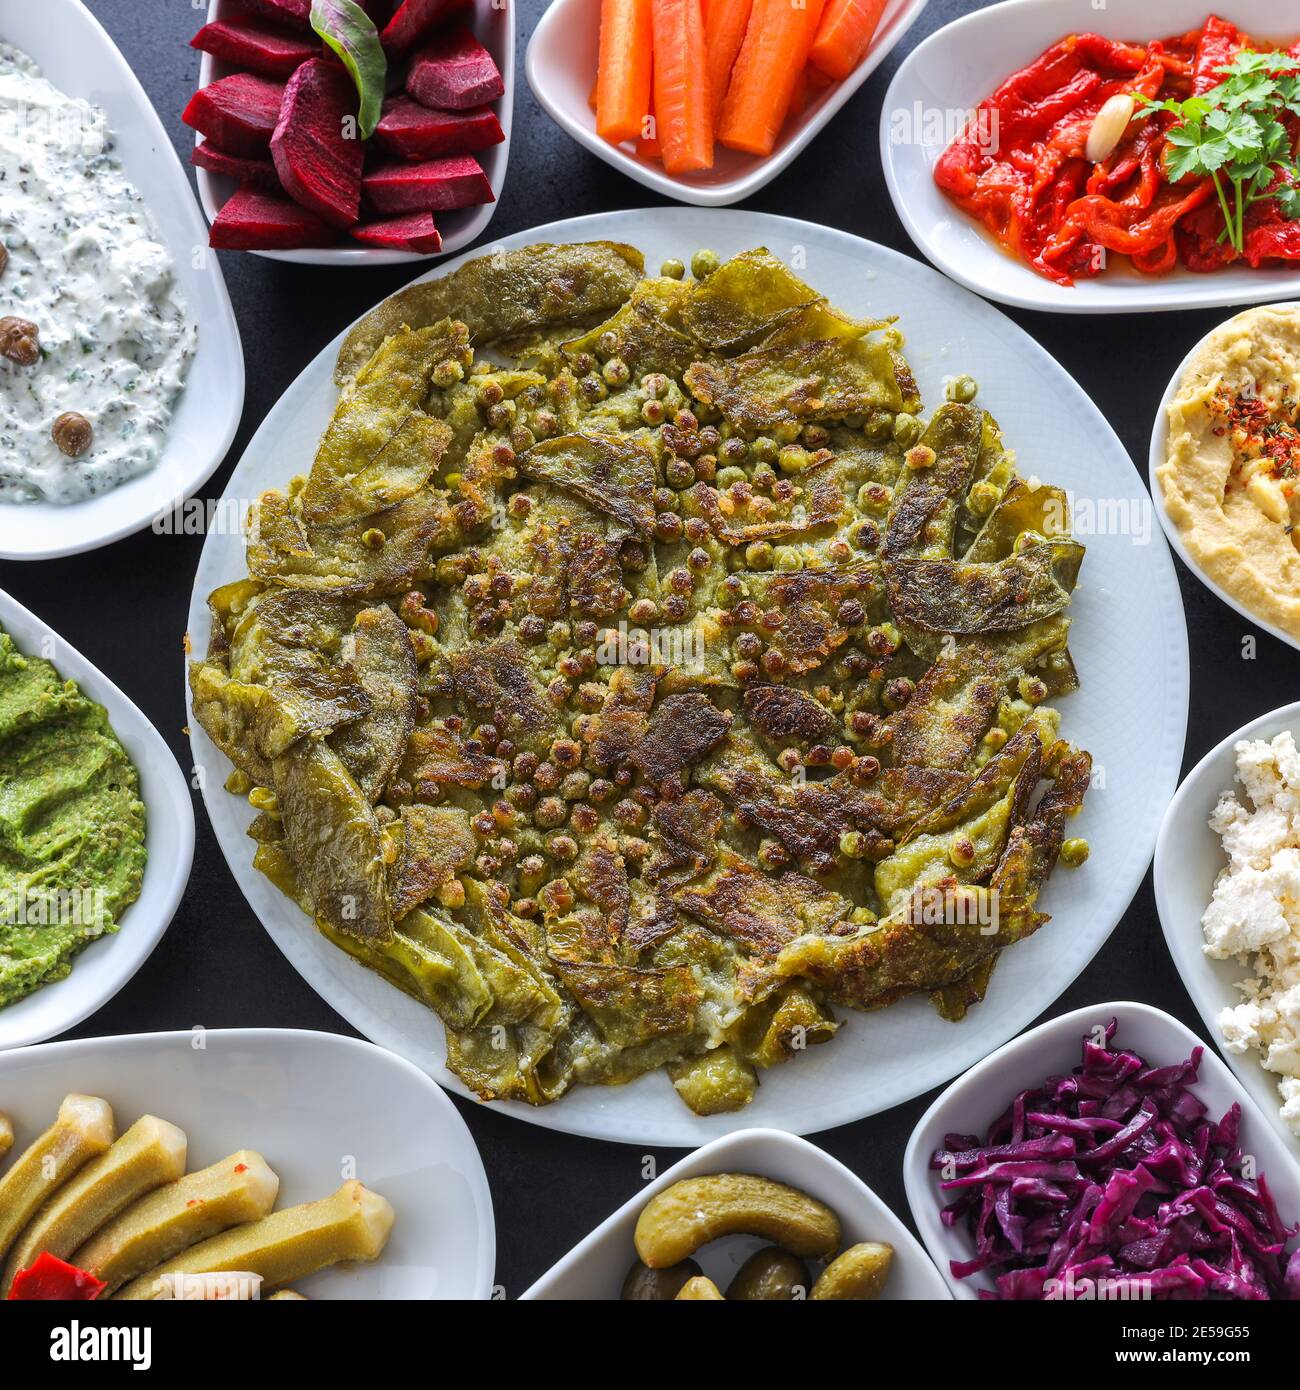 Table de meze traditionnelle turque de légumes. Haricots verts frits avec feuilles de raisin farcies, houmous colorés, hors-d'œuvre froids (avec huile d'olive) Banque D'Images